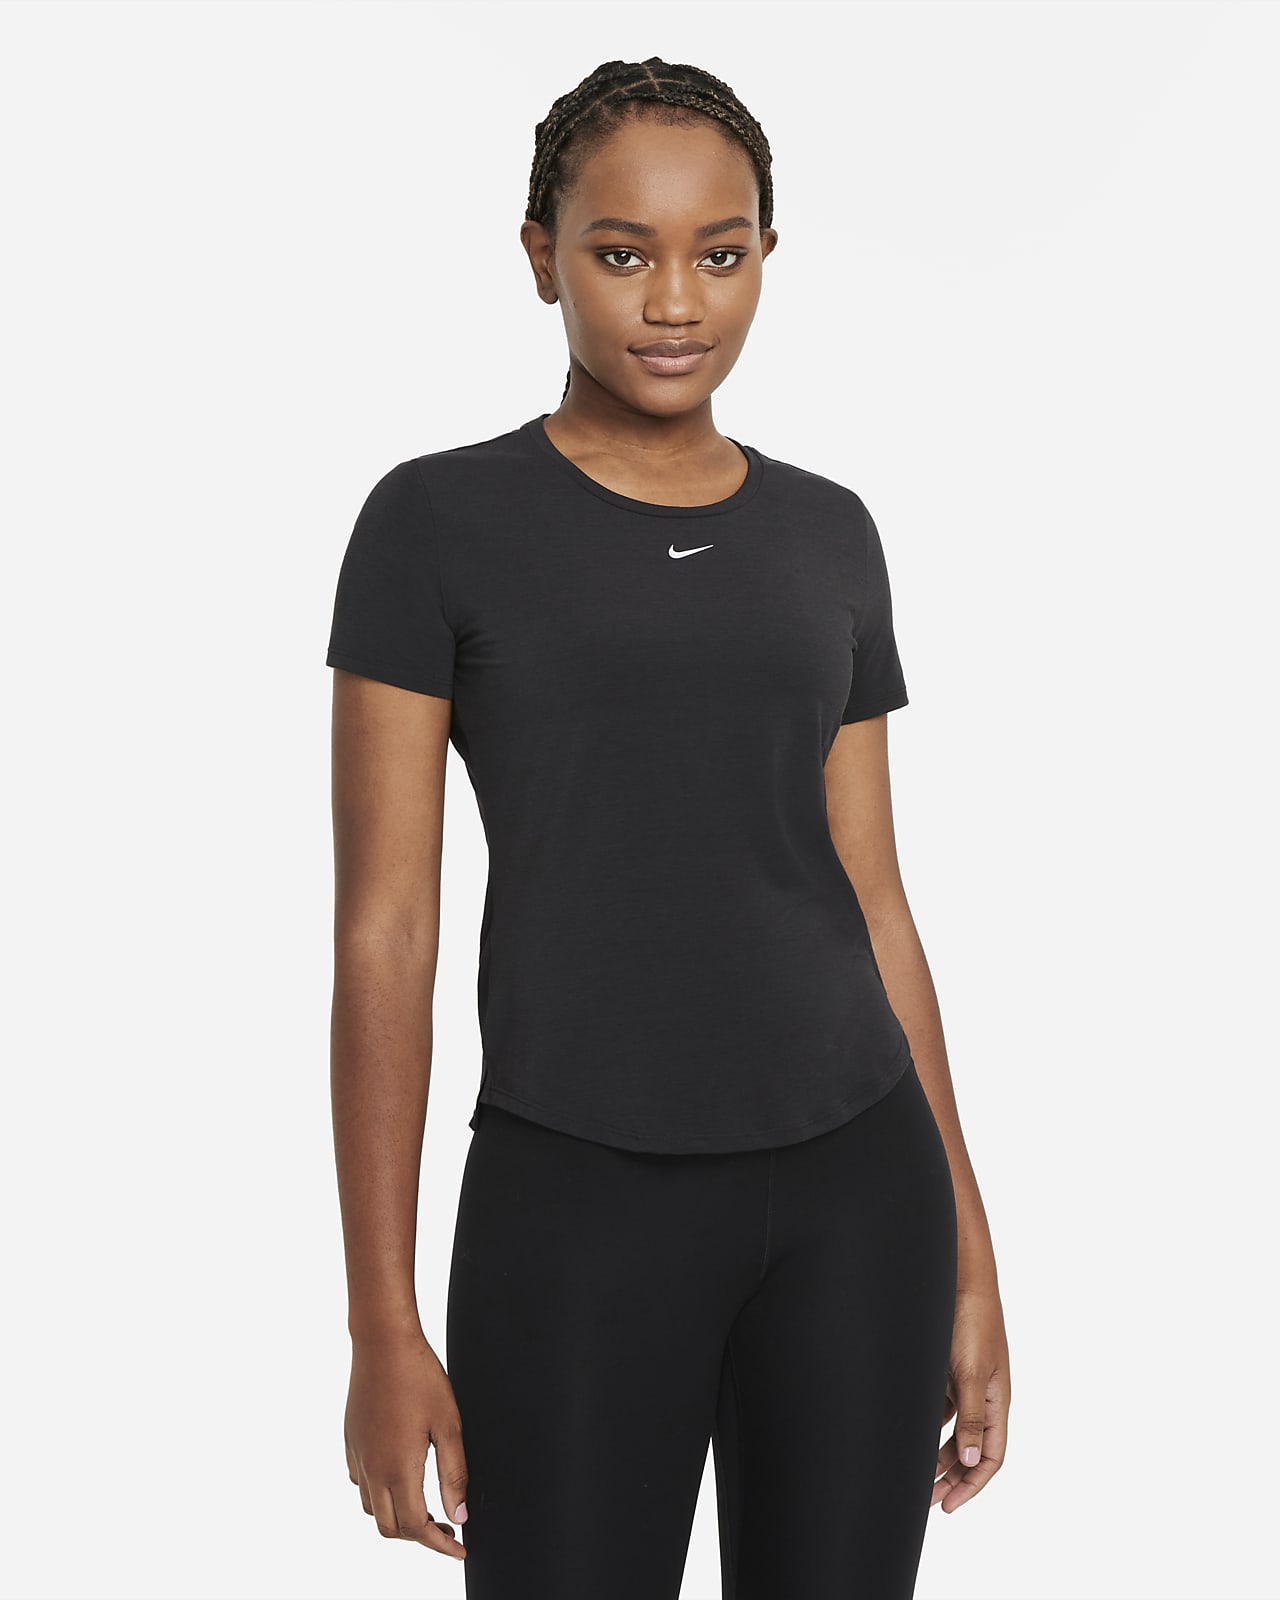 Las mejores ofertas en Poliéster Nike Yoga Ropa Deportiva para Mujeres